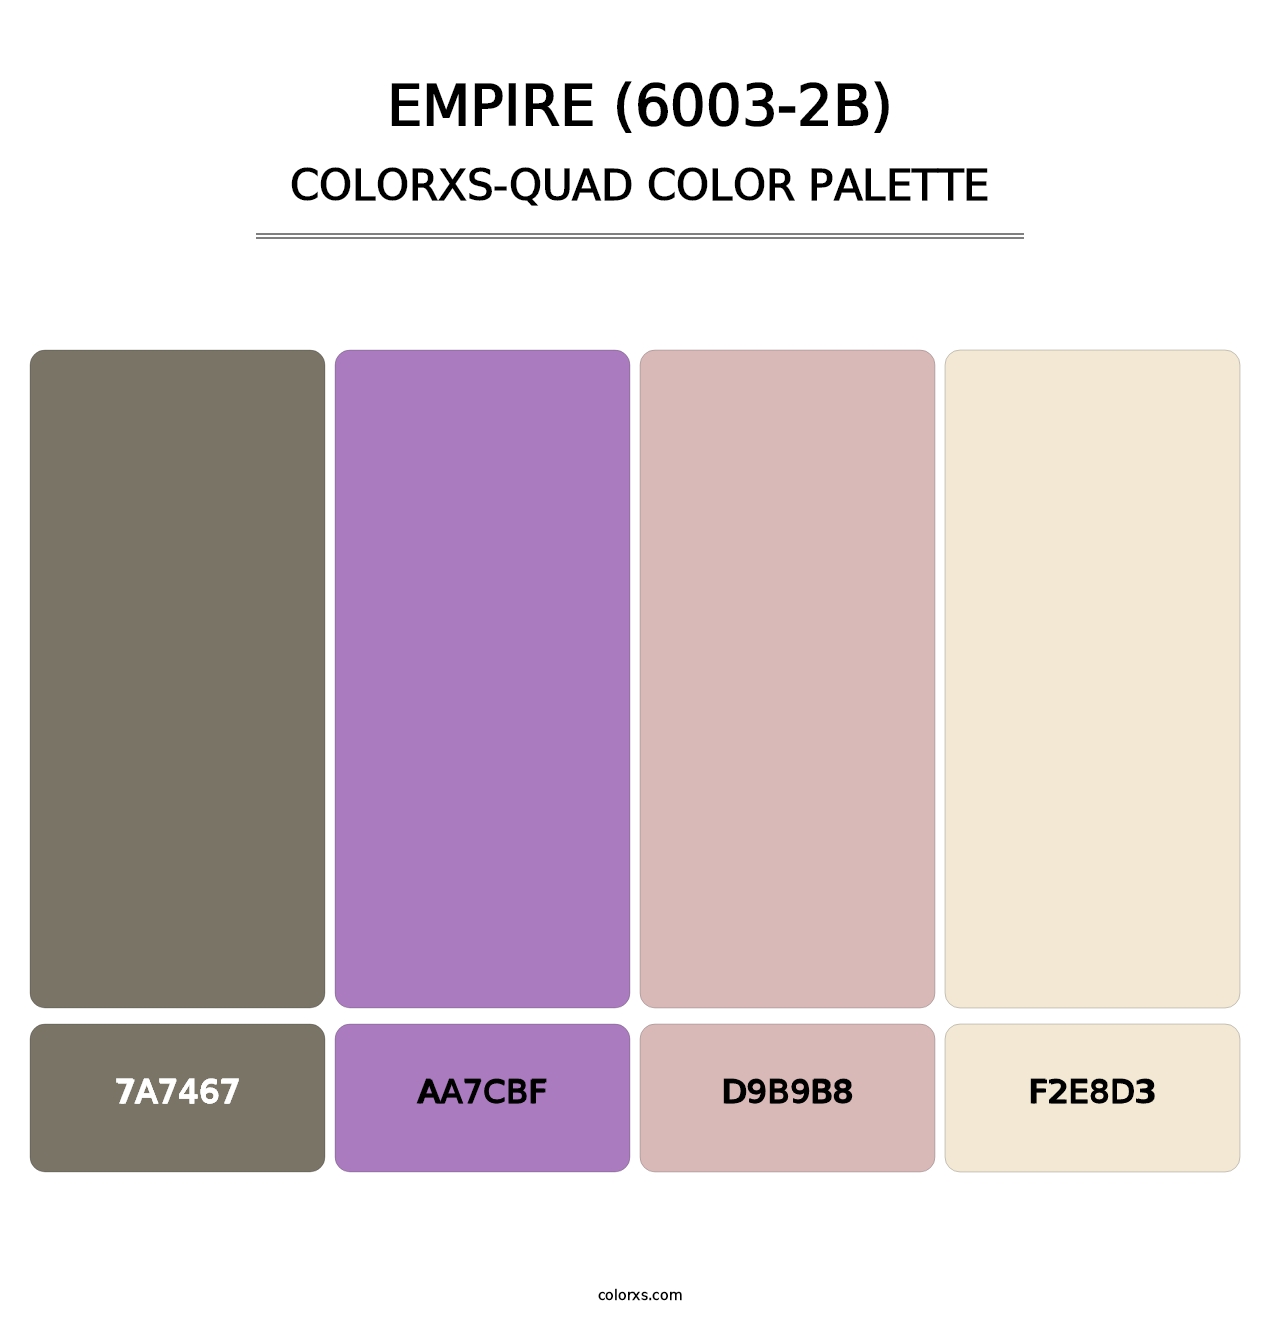 Empire (6003-2B) - Colorxs Quad Palette